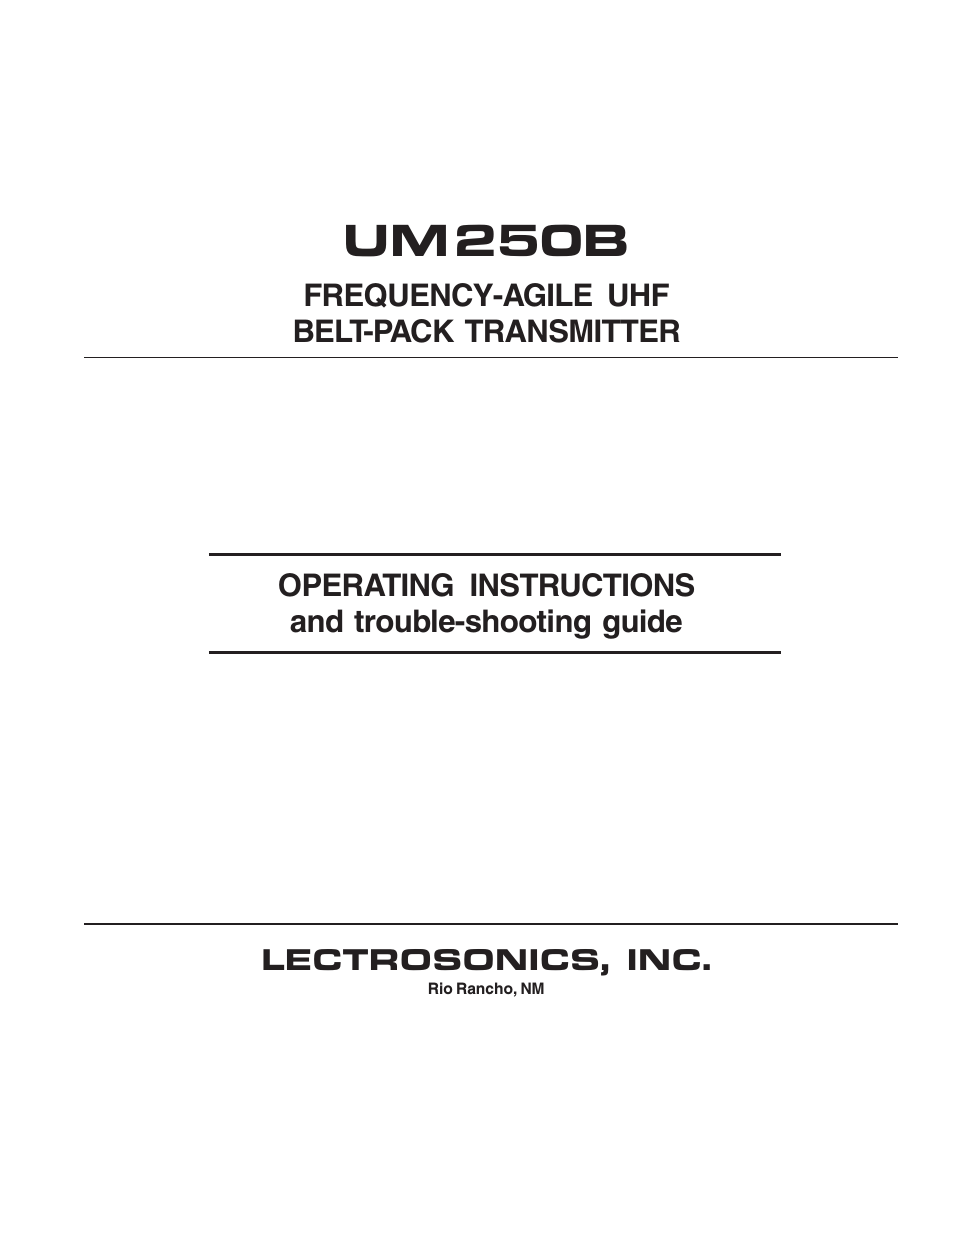 UM250b